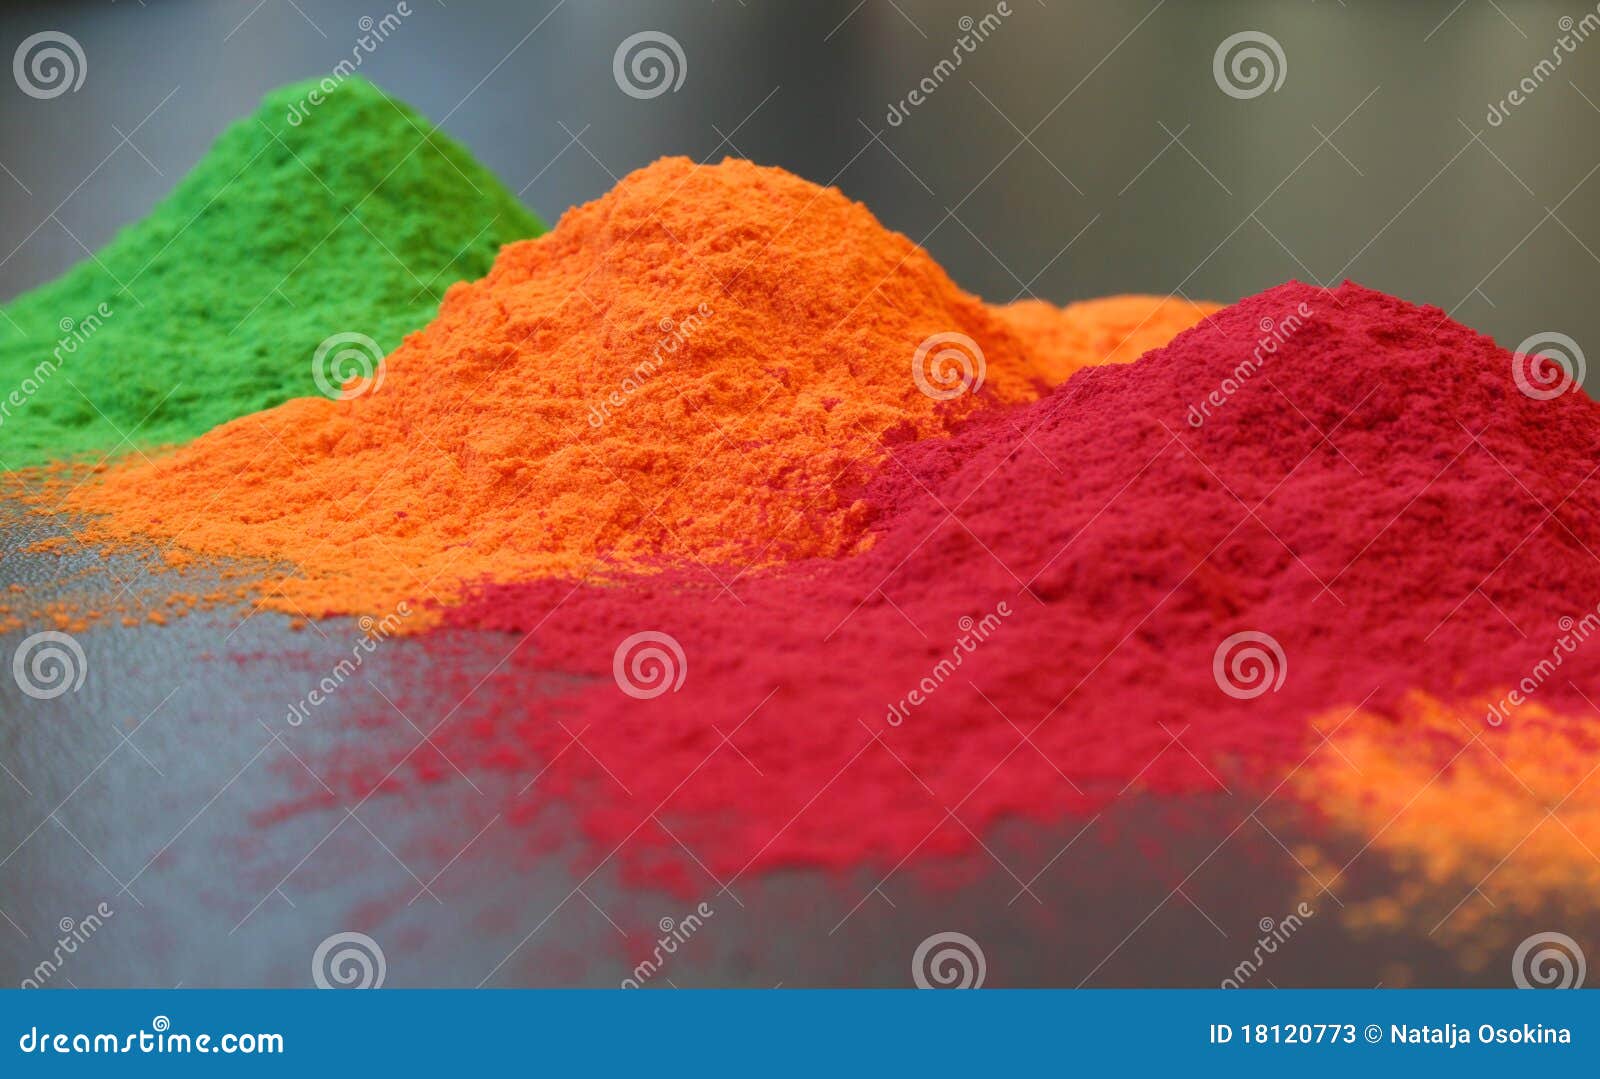 color powder